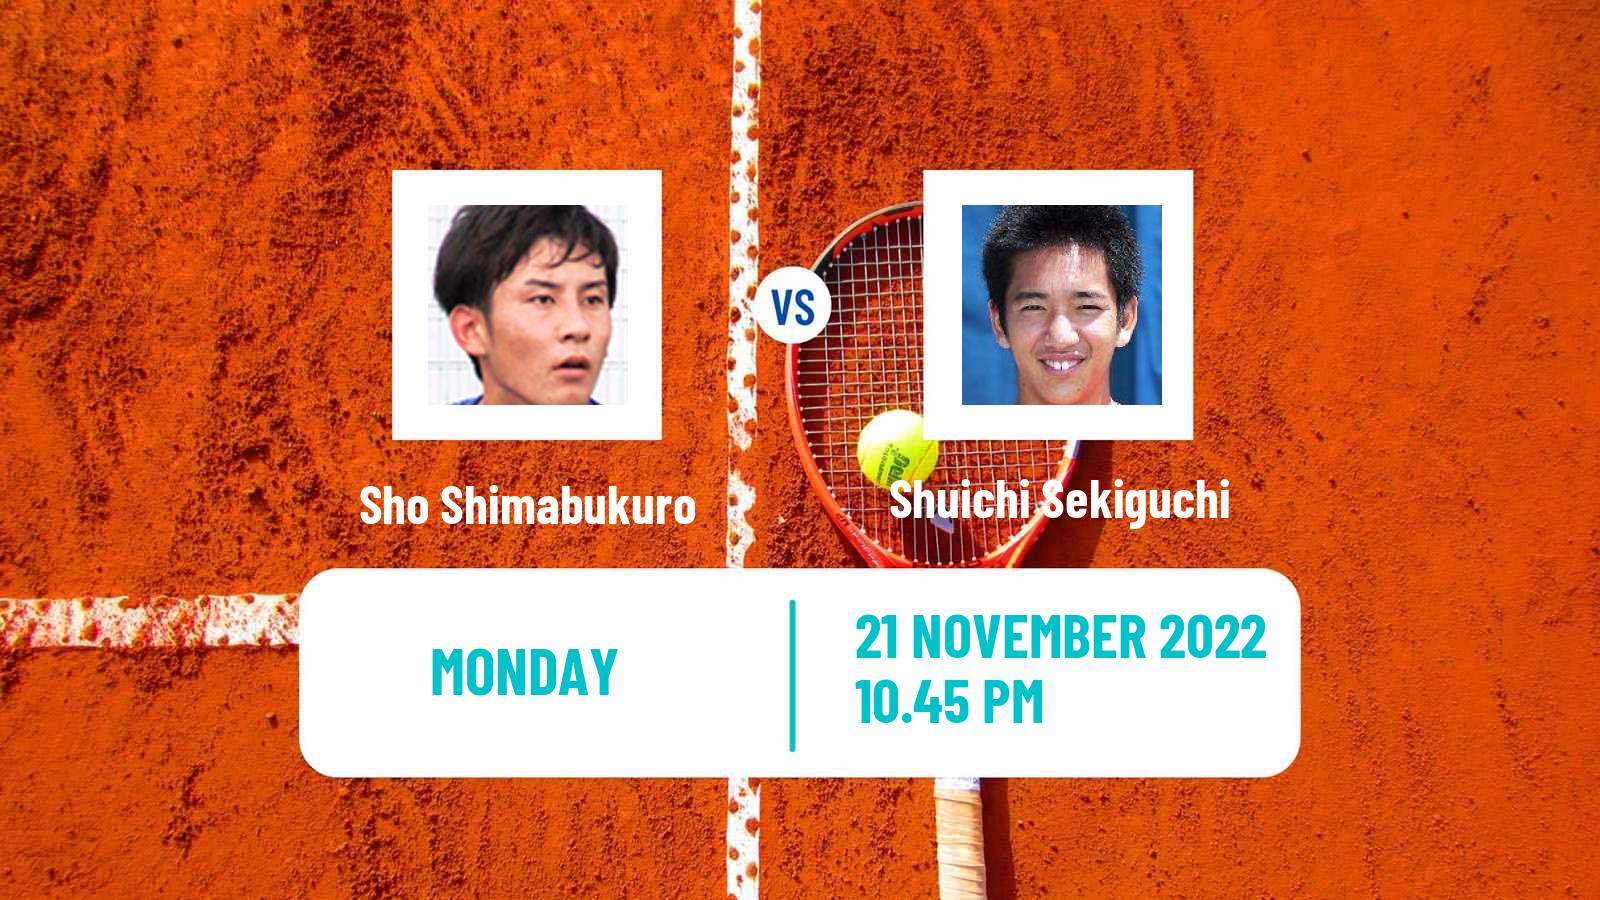 Tennis ATP Challenger Sho Shimabukuro - Shuichi Sekiguchi